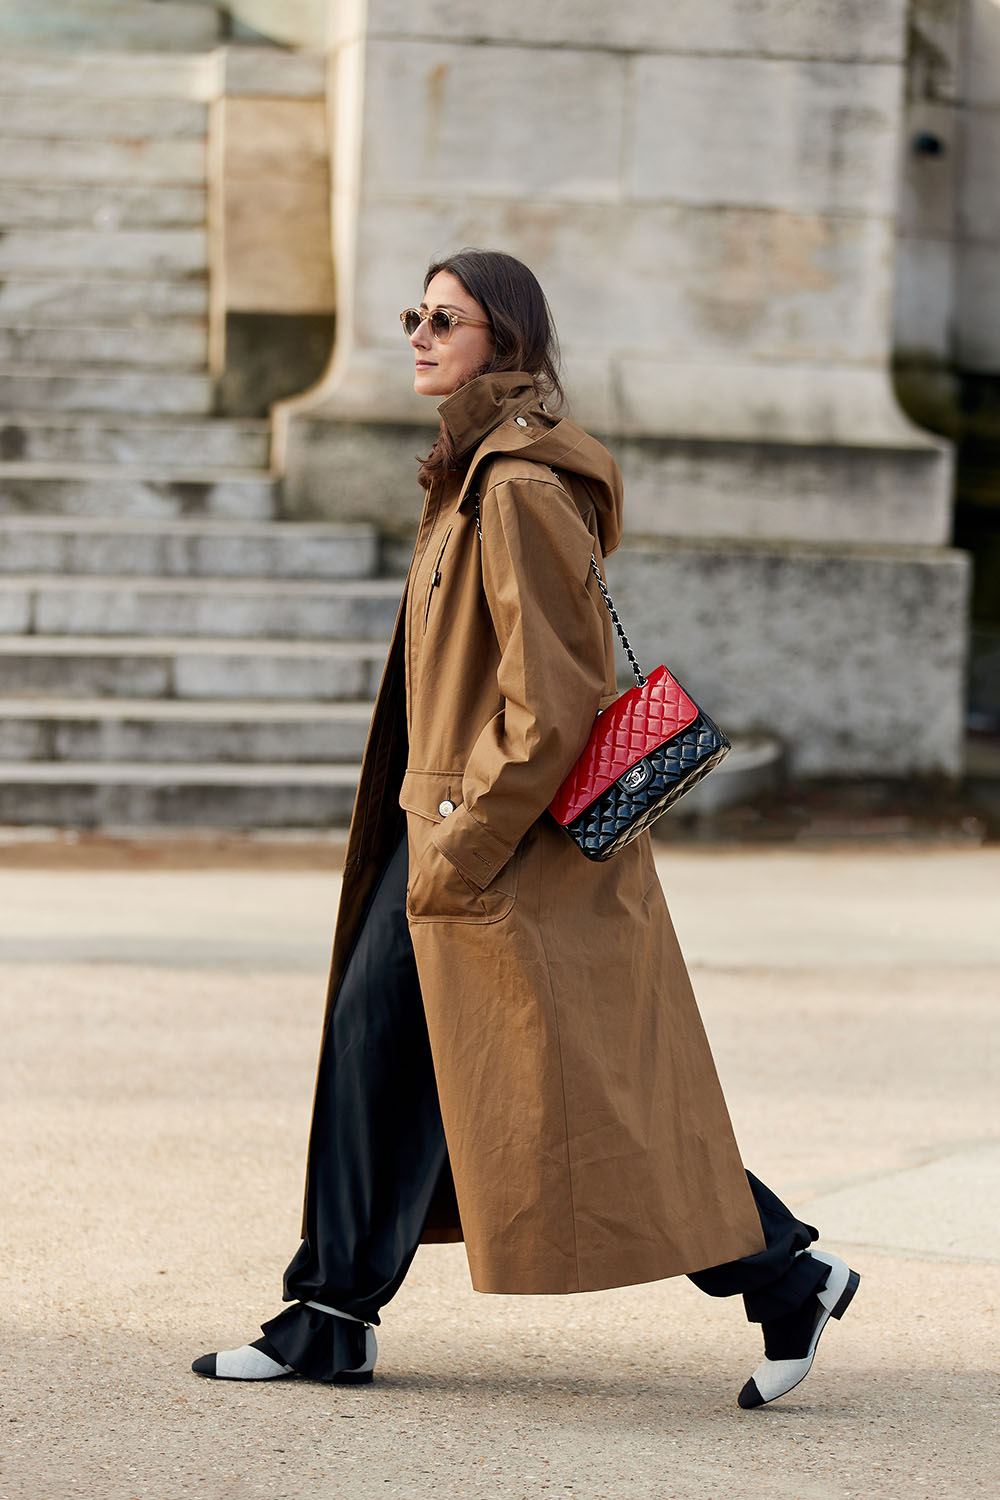 5 Best Louis Vuitton Bags Worth Investing in • Petite in Paris